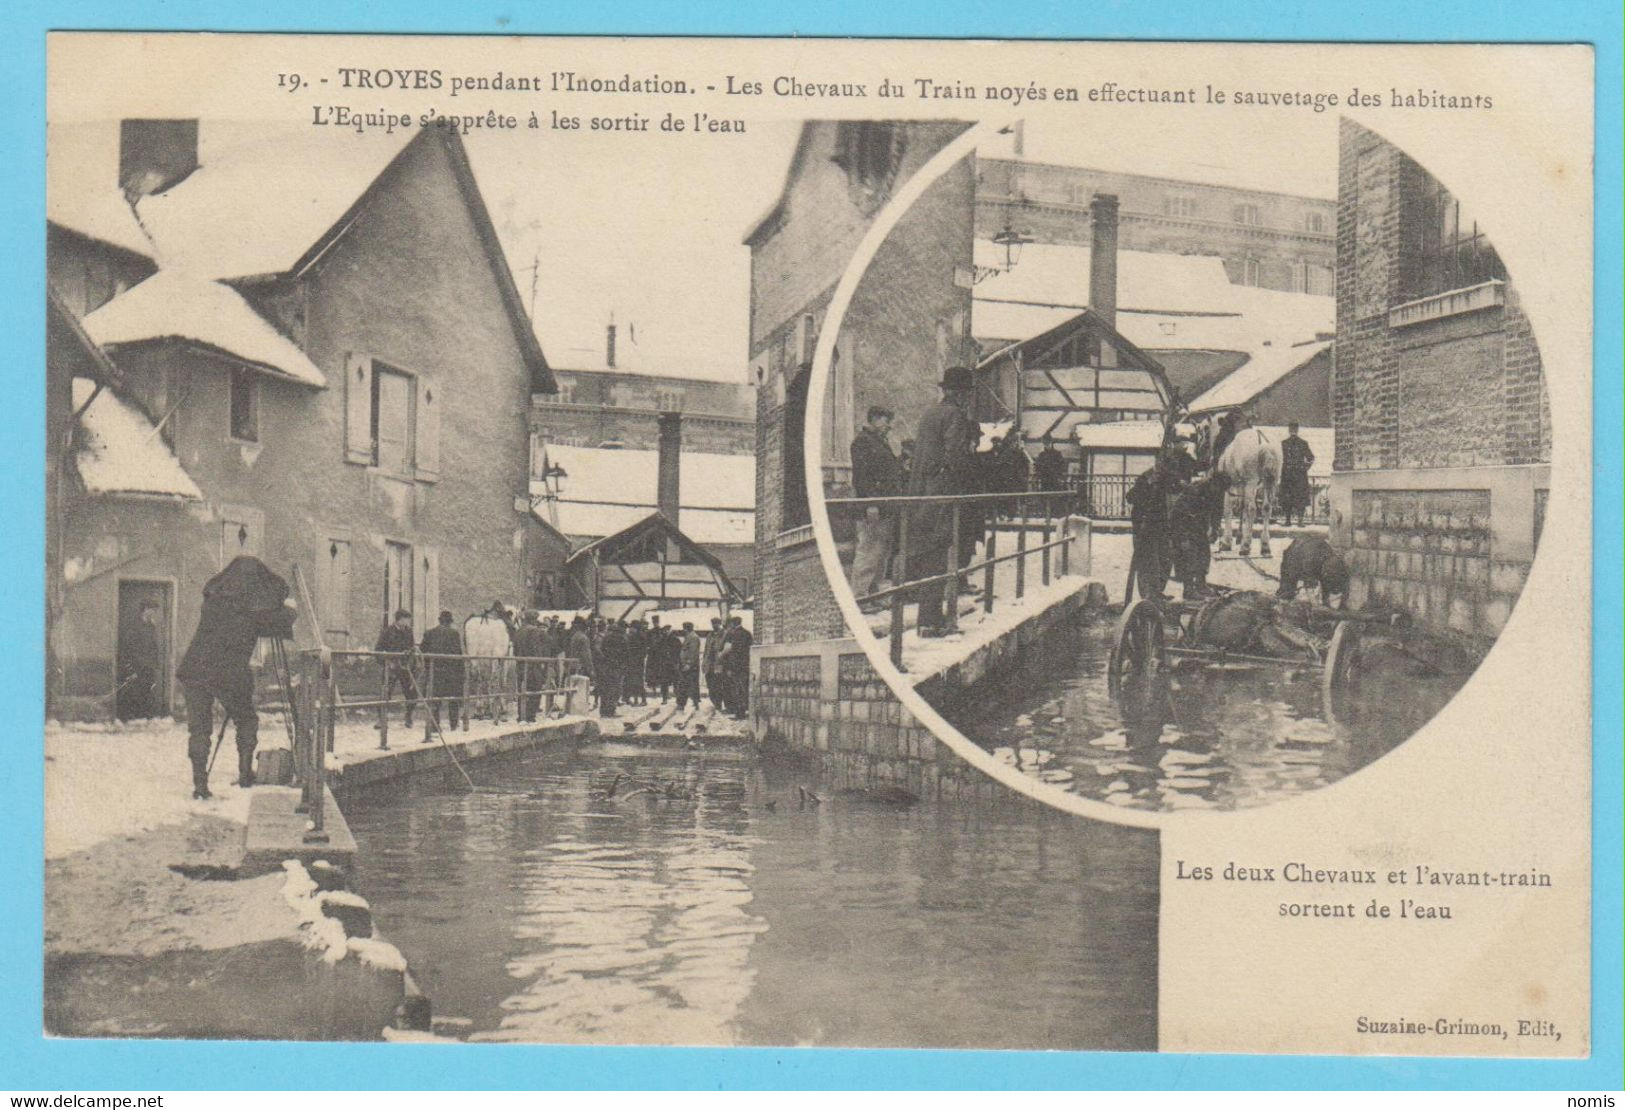 J.P.S. 12 - C.P. 80 - Inondations du 21 janvier 1910 - Diverses vues - Lot indivisible de 23 cartes